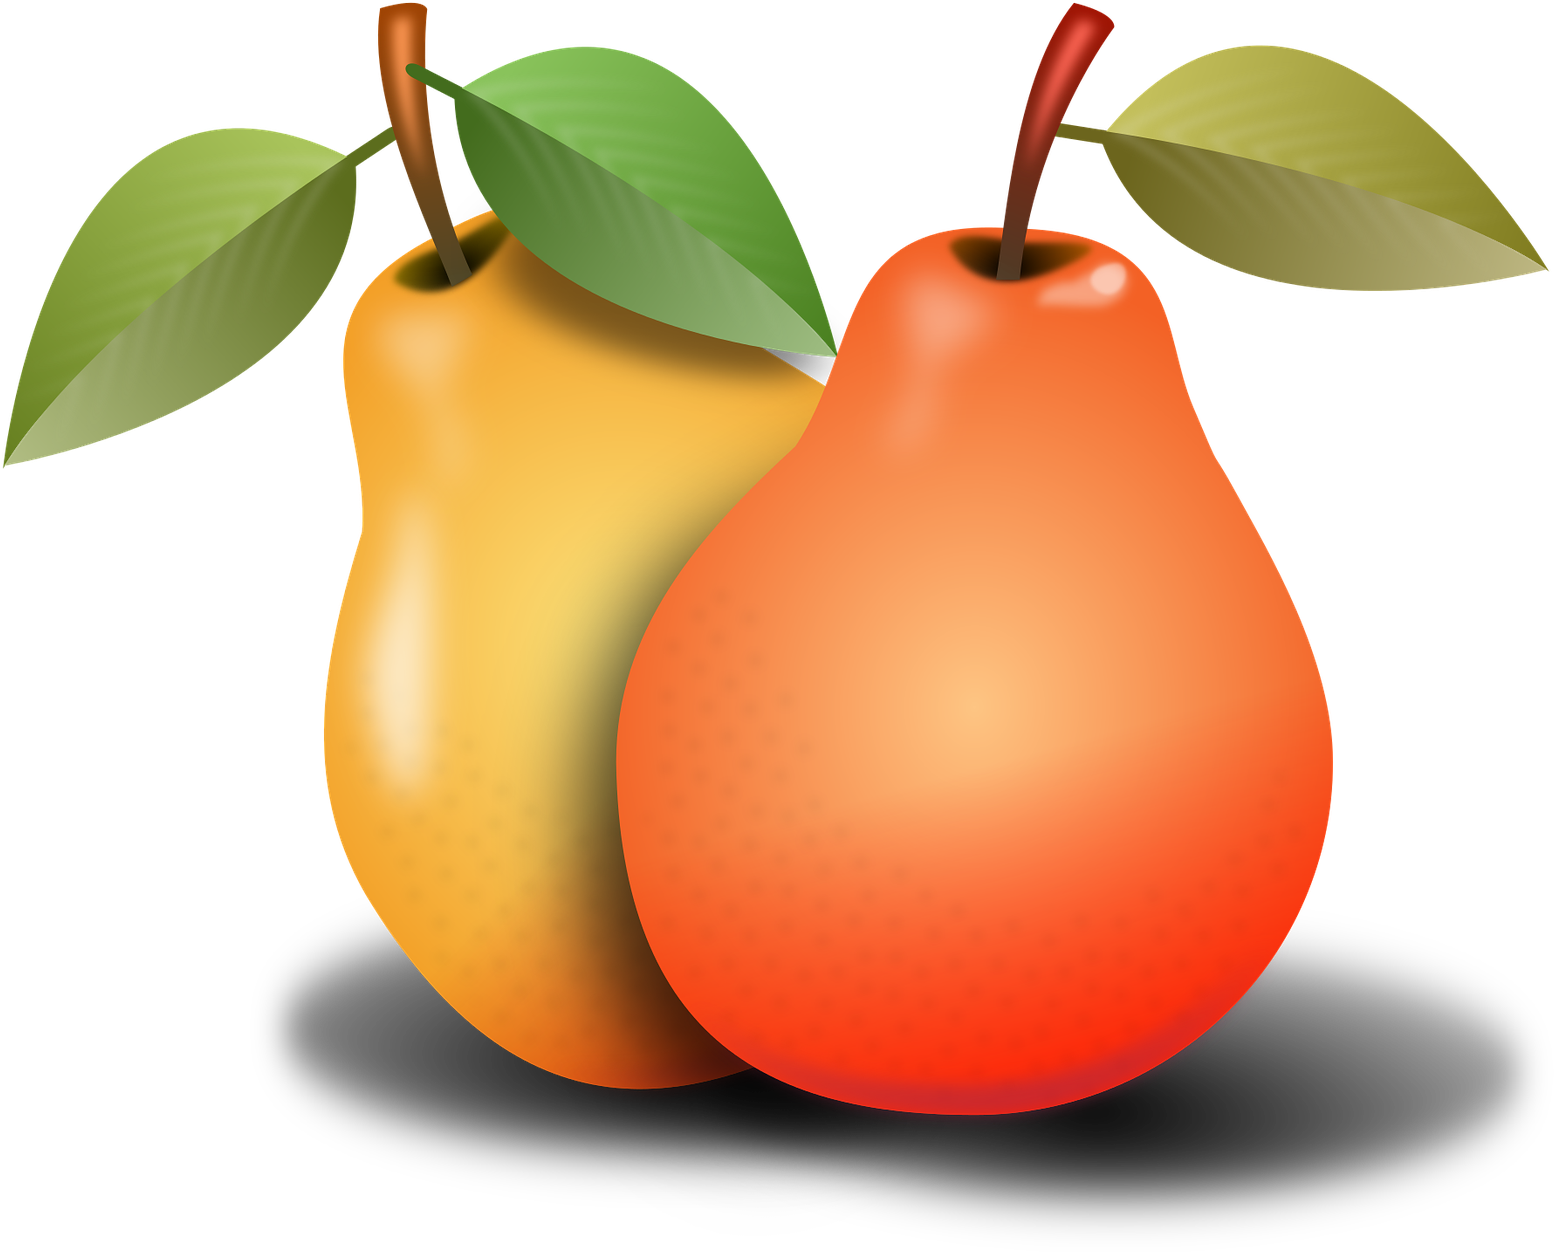 Pears 1920xx1920 - Pear (1920x1920)